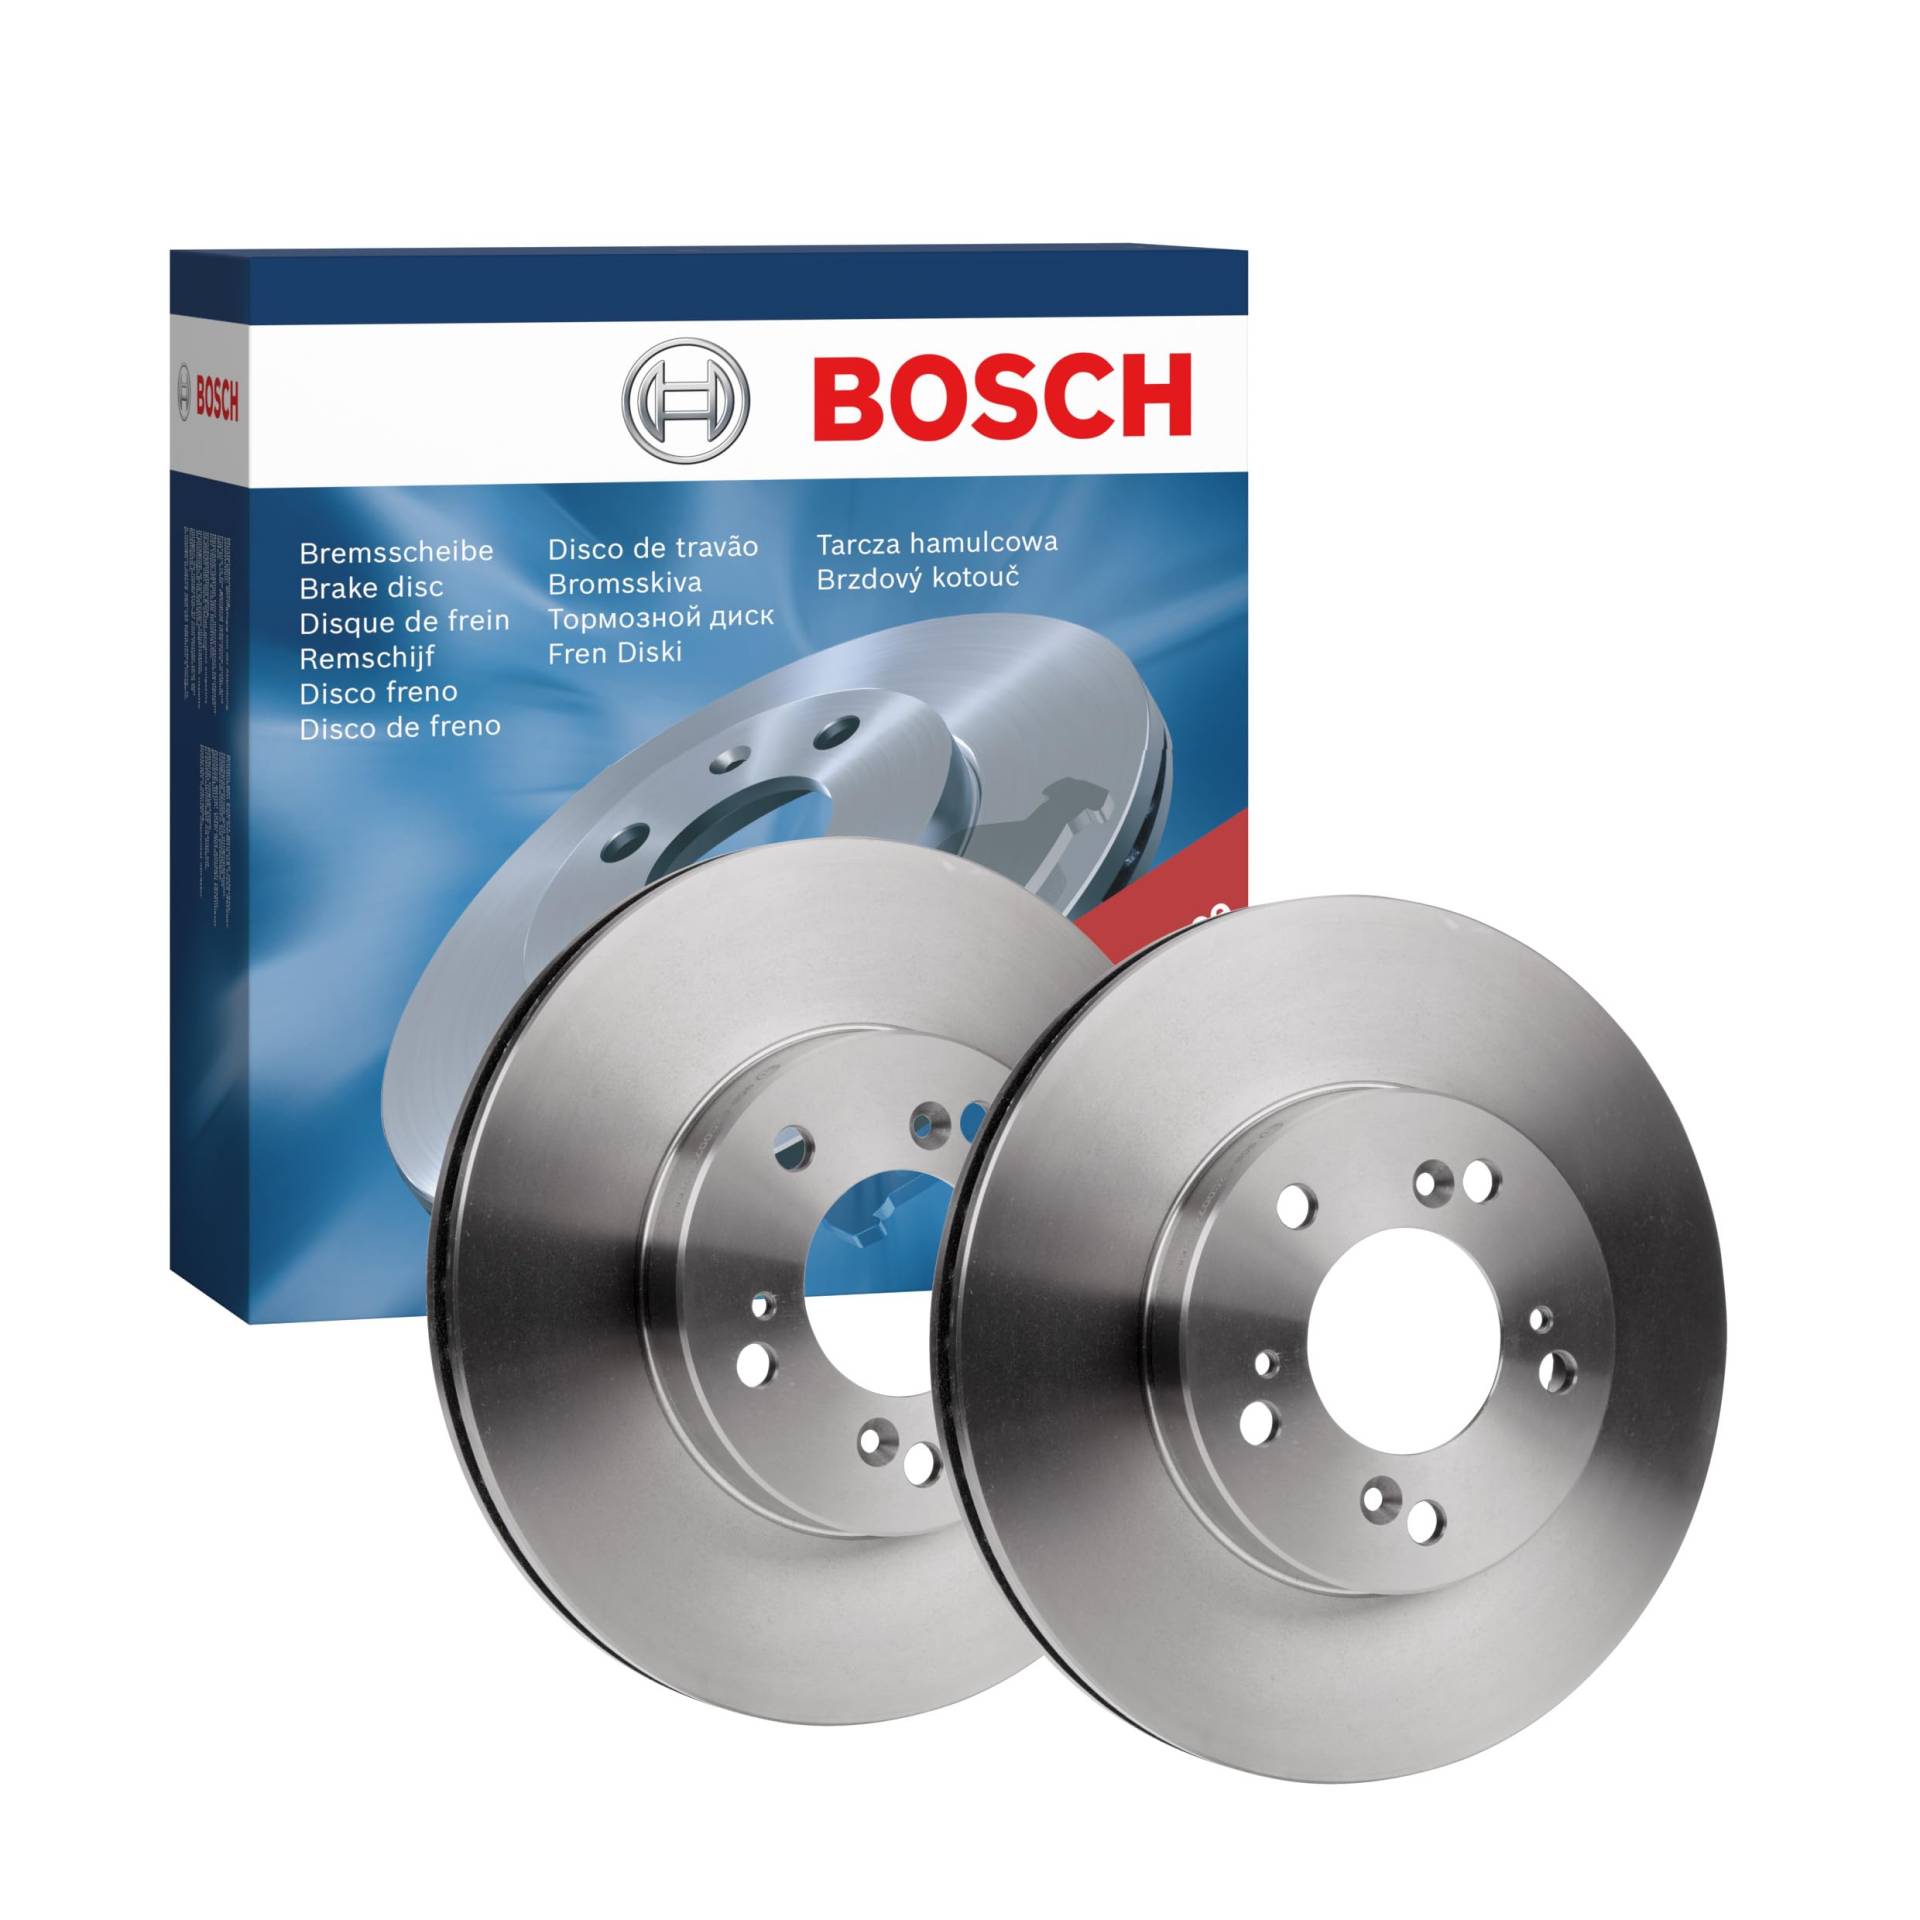 Bosch BD583 Bremsscheiben - Vorderachse - ECE-R90 Zertifizierung - zwei Bremsscheiben pro Set von Bosch Automotive